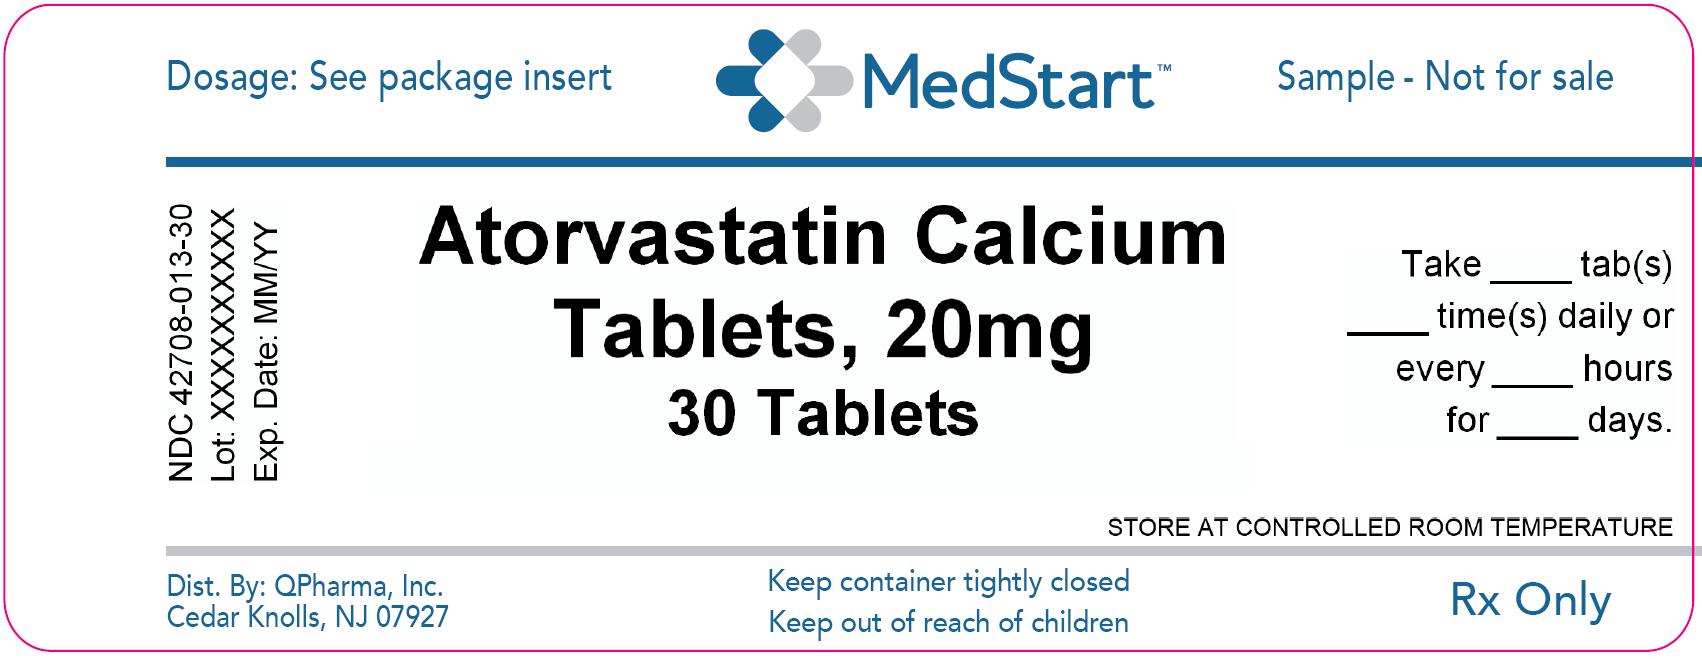 42708-013-30 Atorvastatin Calcium Tablets 20mg x 30 V2